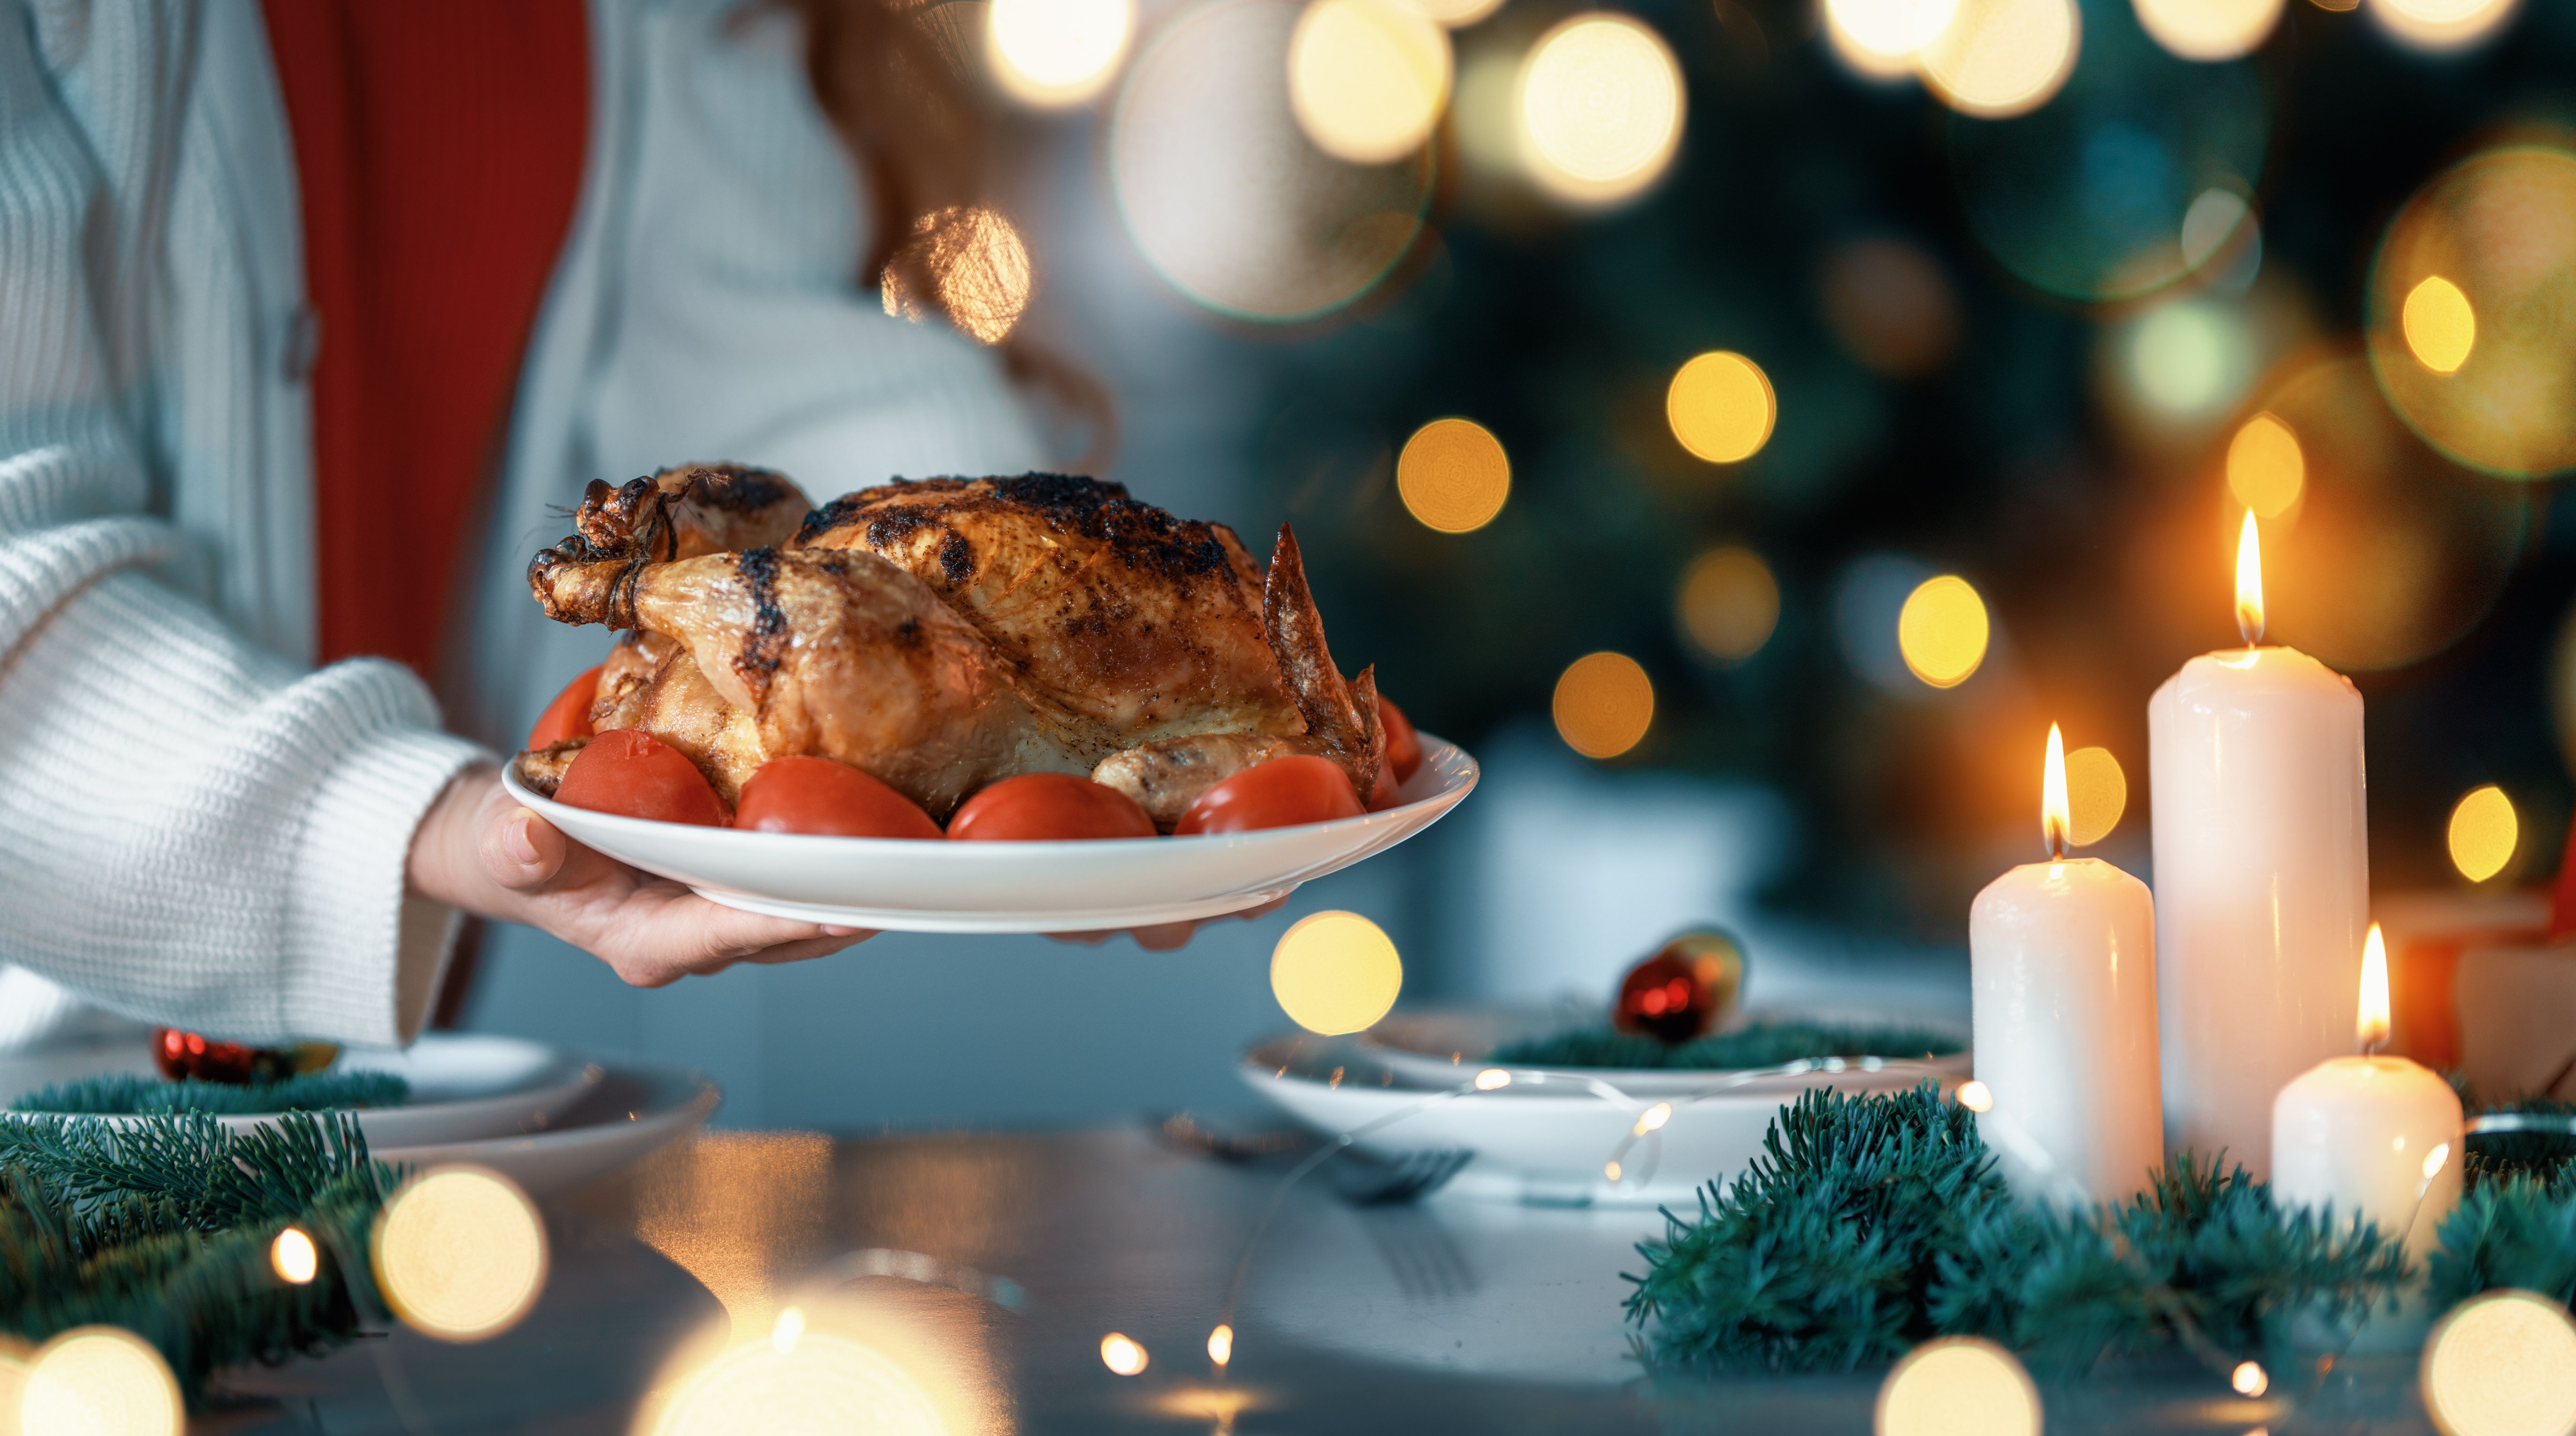 Las recetas fáciles y saludables para Navidad de Amancio Ortega. Foto: Bigstock